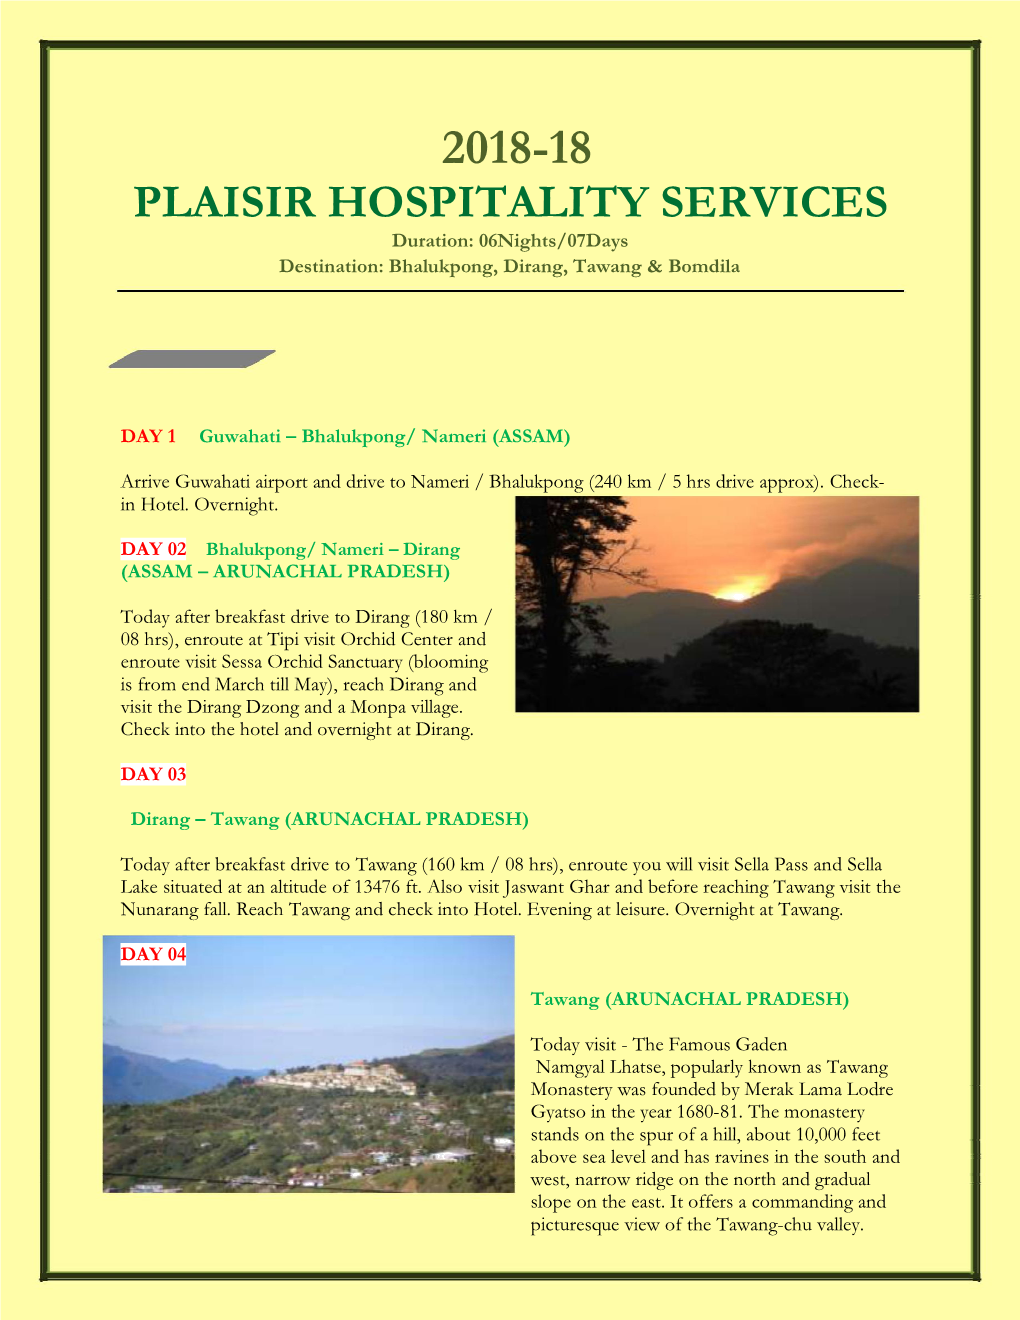 2018-18 Plaisir Hospitality Services